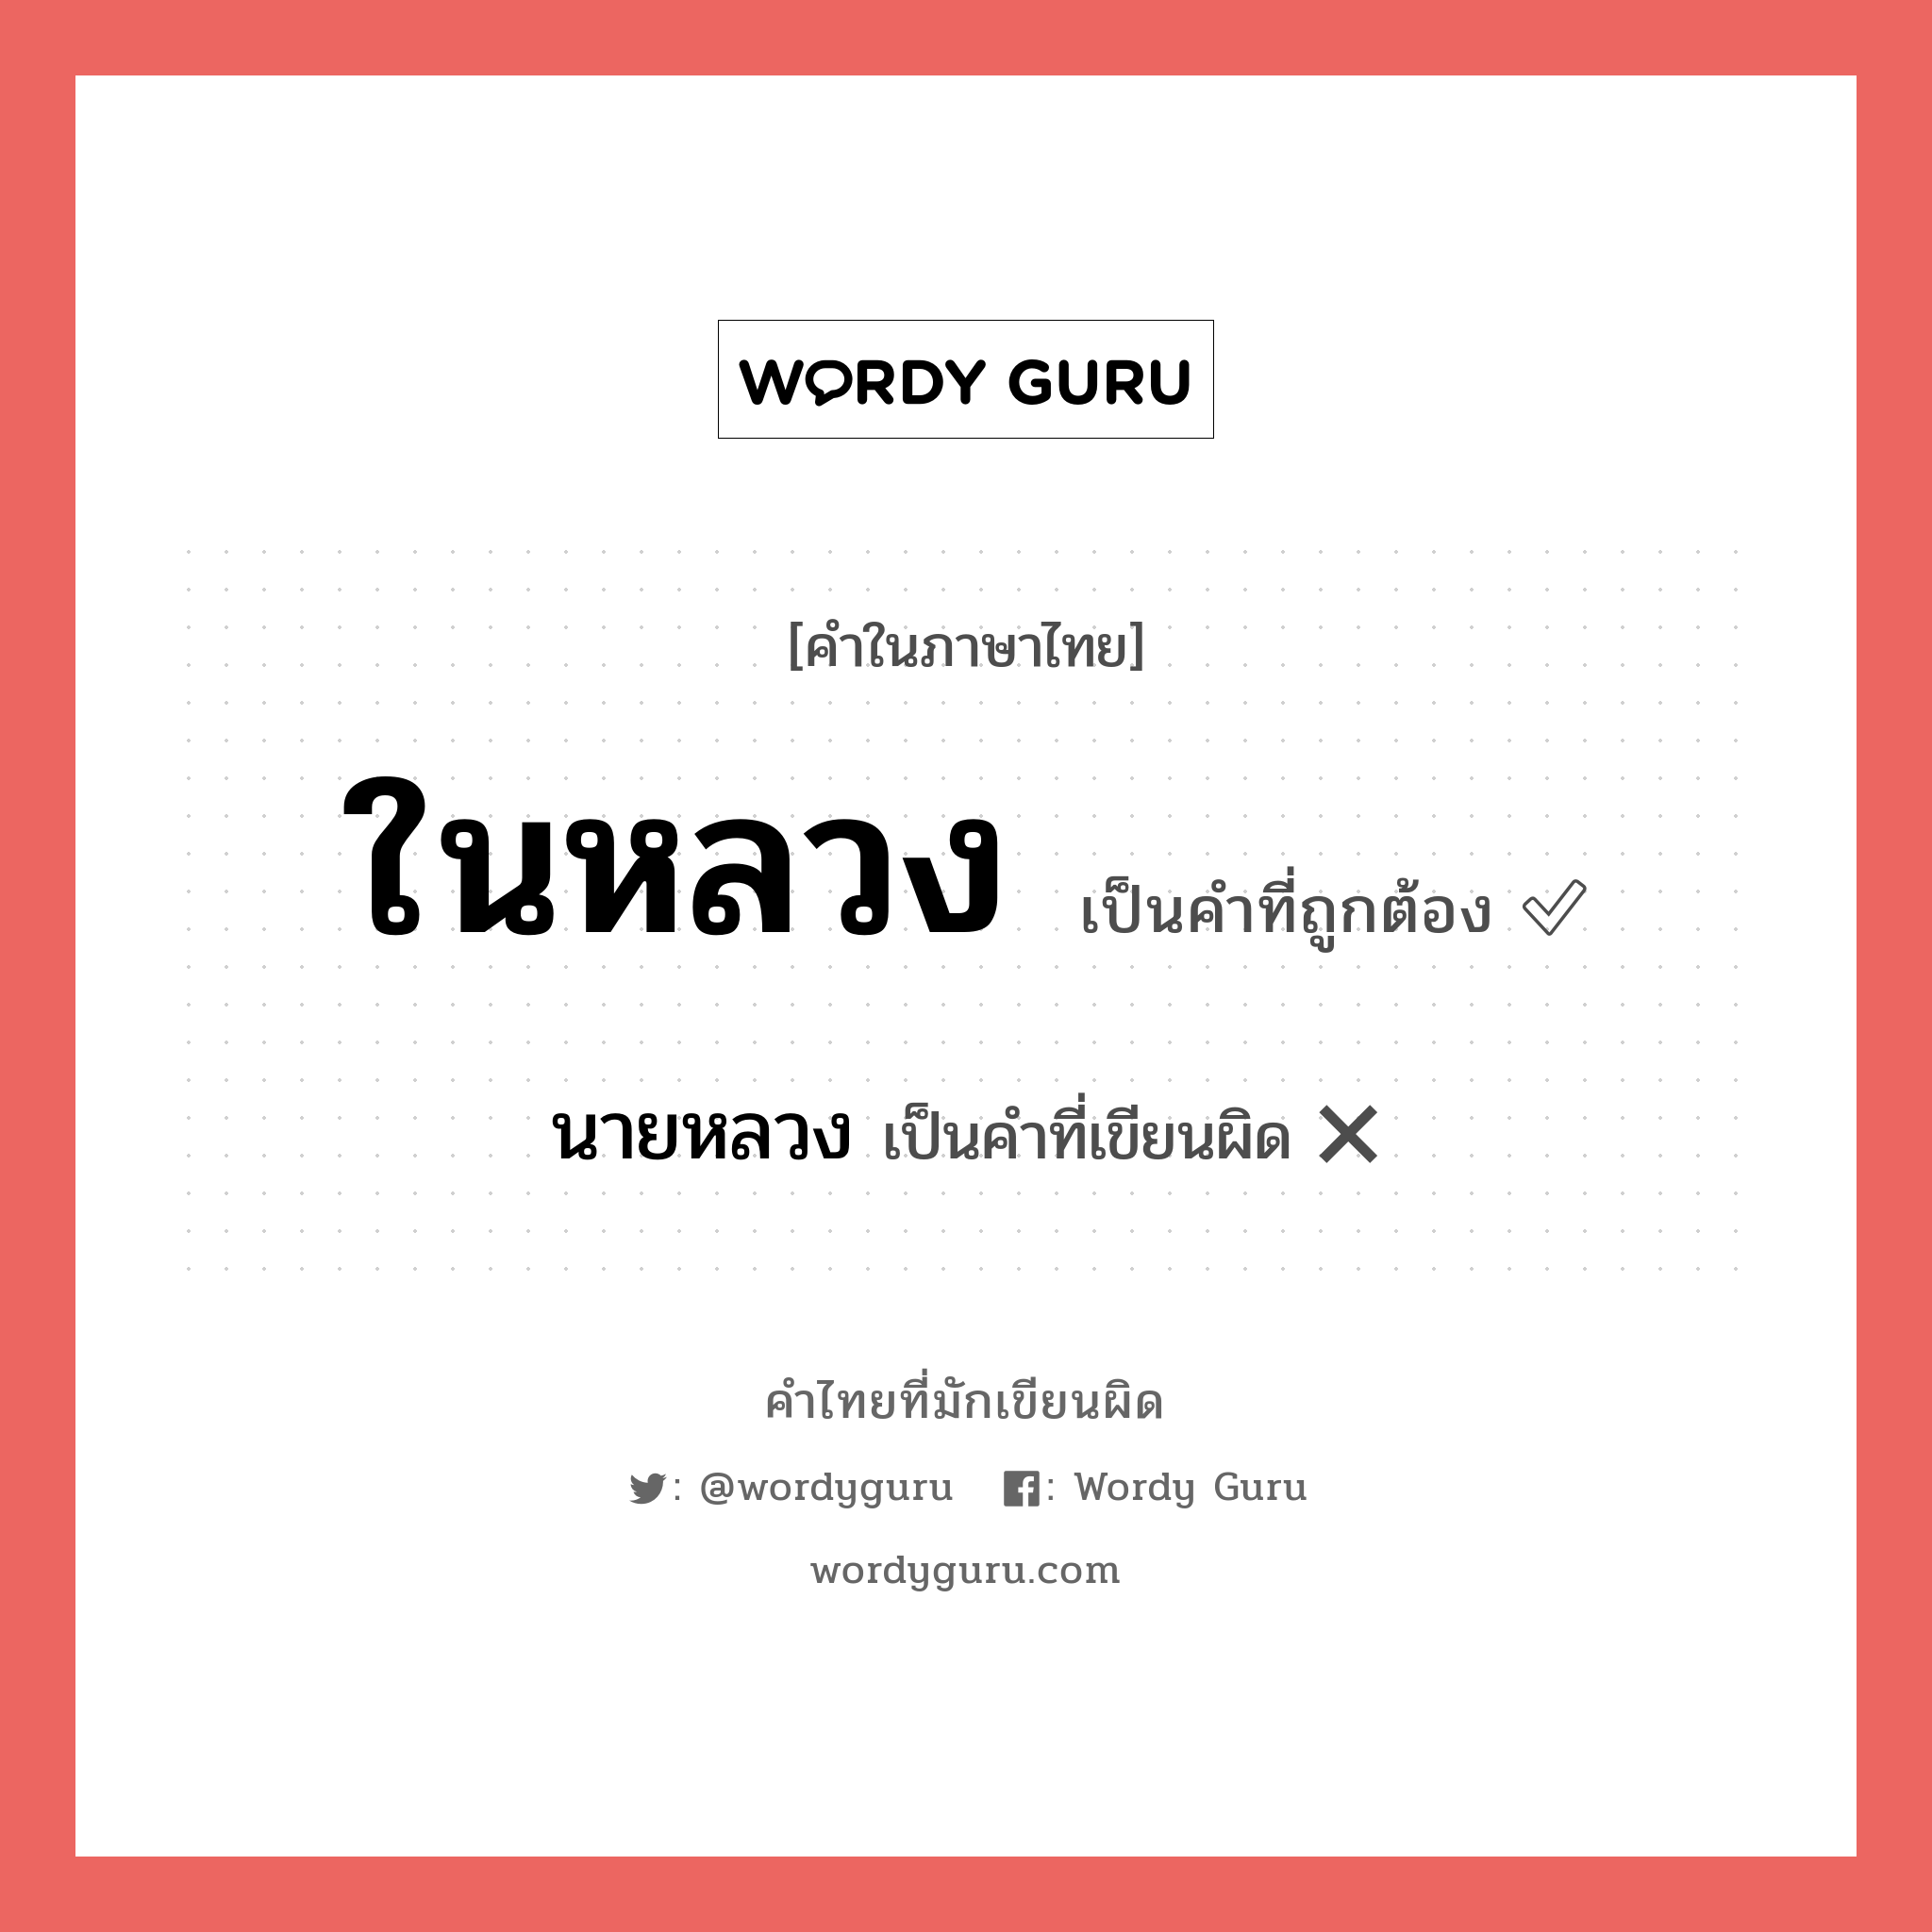 นายหลวง หรือ ในหลวง คำไหนเขียนถูก?, คำในภาษาไทยที่มักเขียนผิด นายหลวง คำที่ผิด ❌ ในหลวง